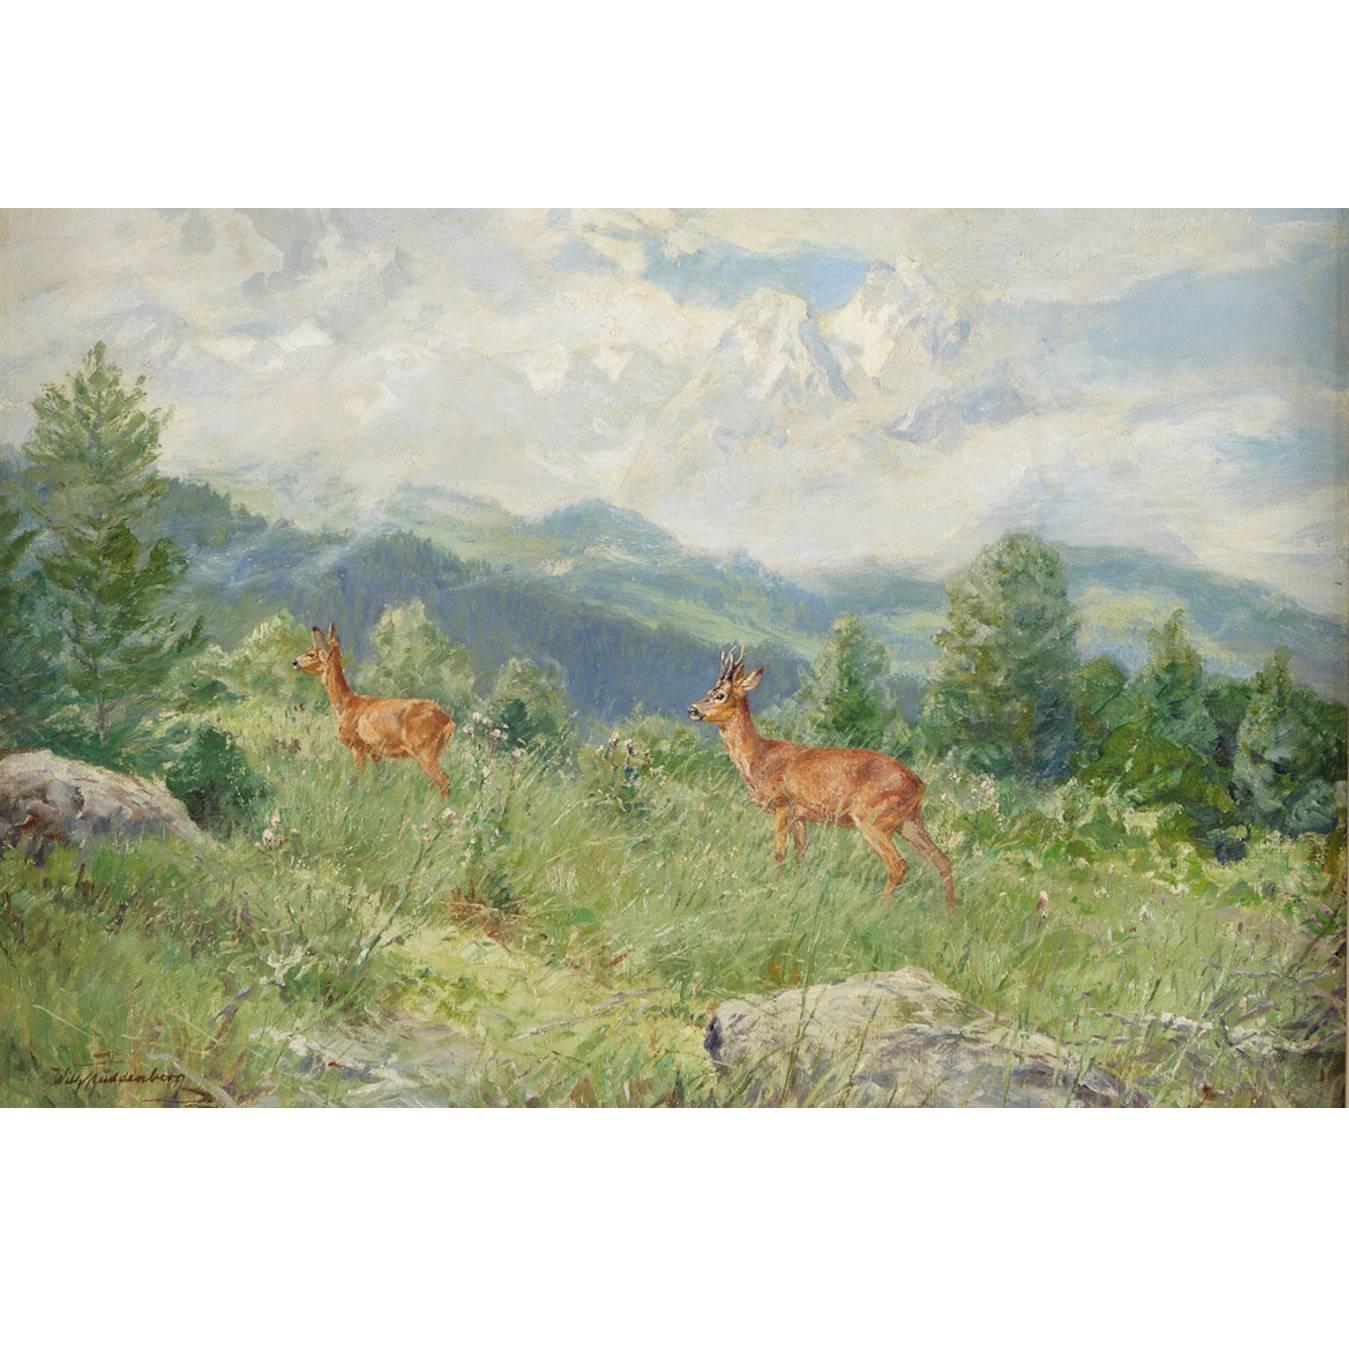 Ein schönes und feines Berglandschaftsgemälde des deutschen Malers Wilhelm Buddenberg (1890-1967), das zwei Rehe an einem 